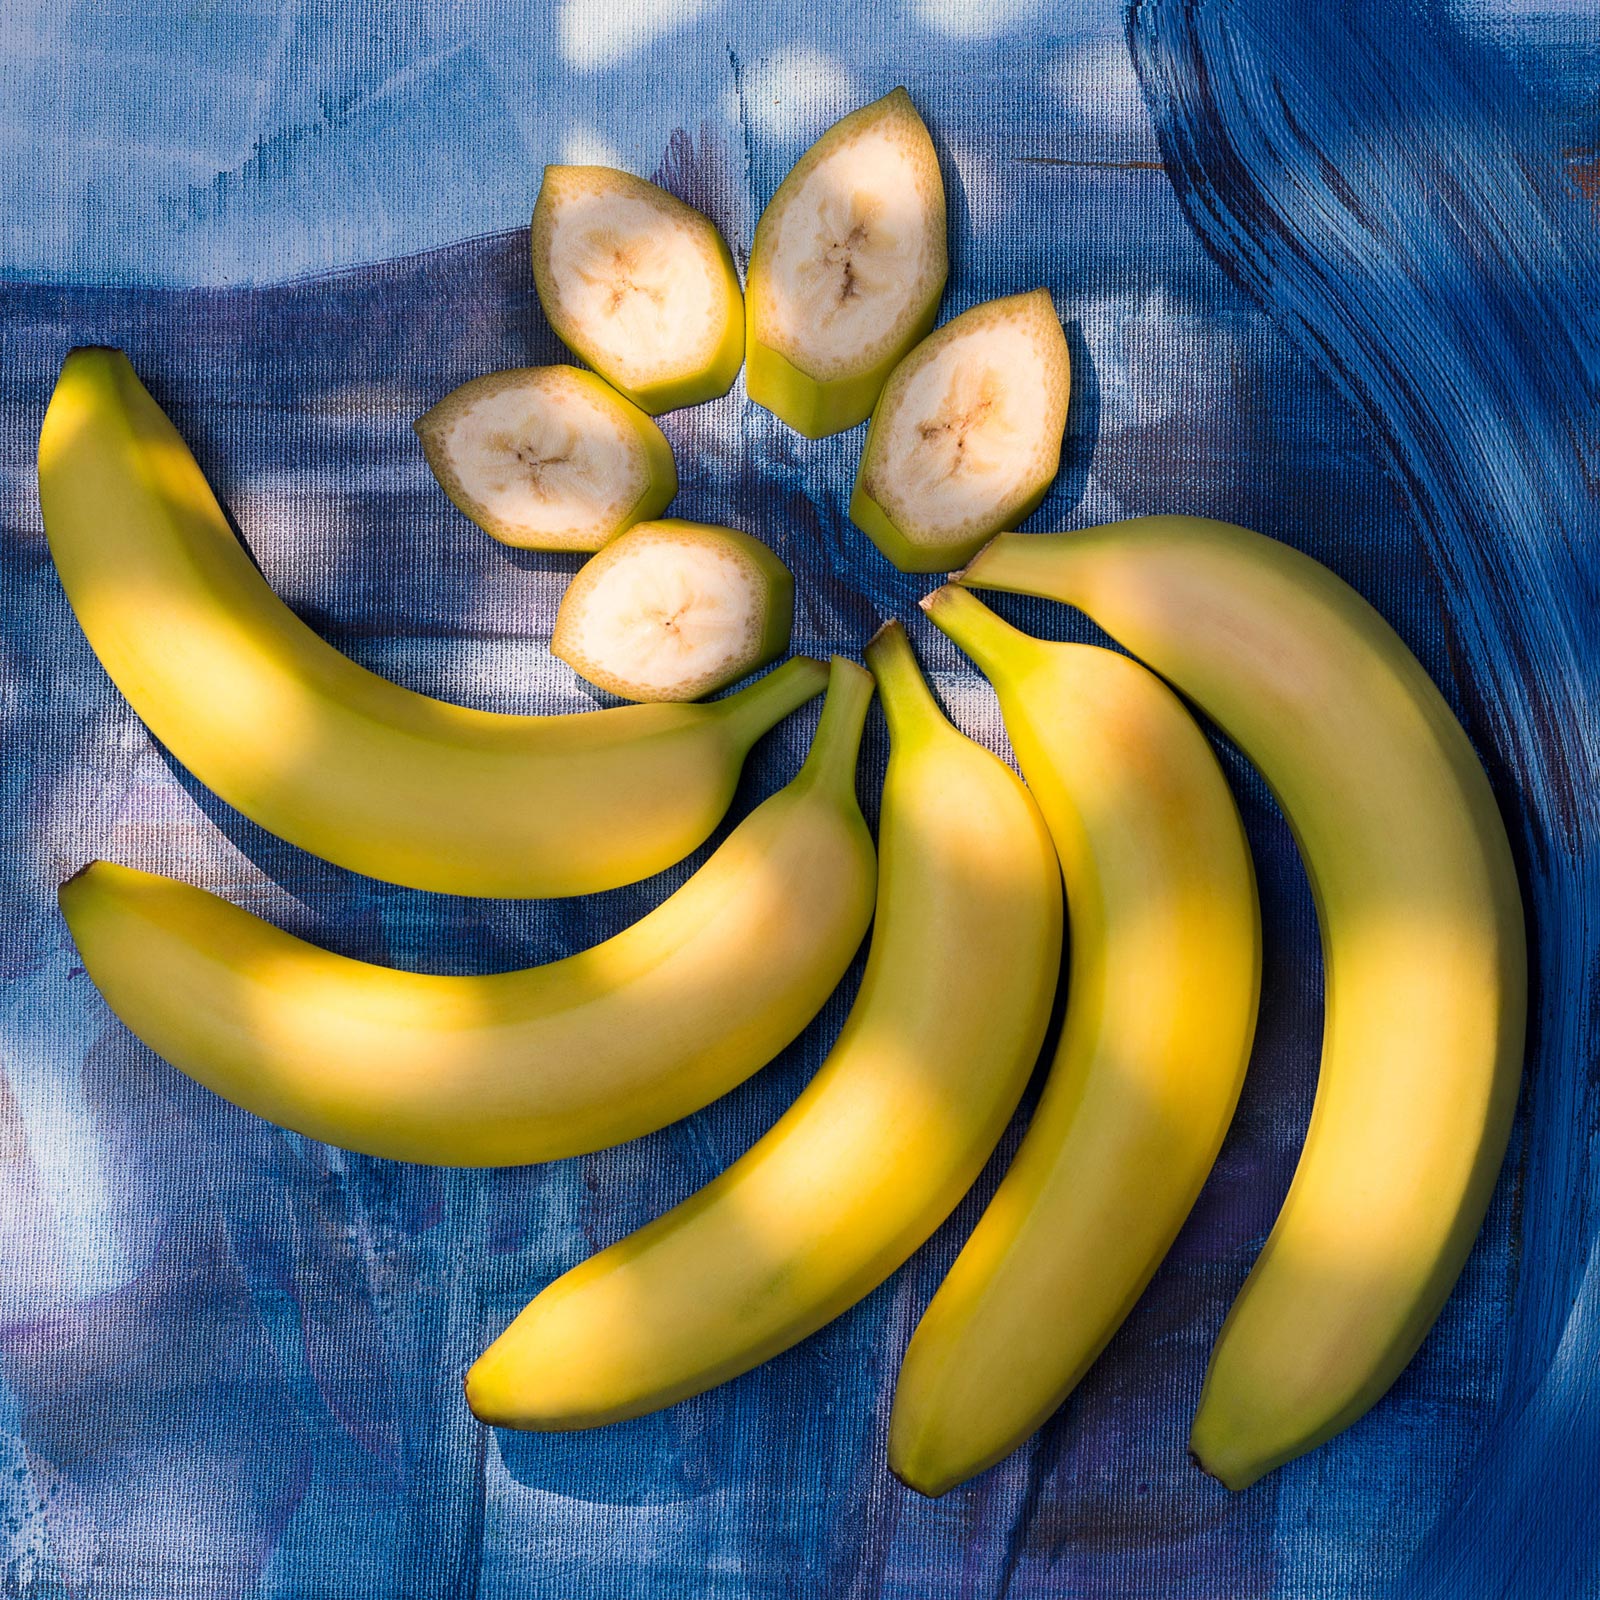 żółte banany na obrusie